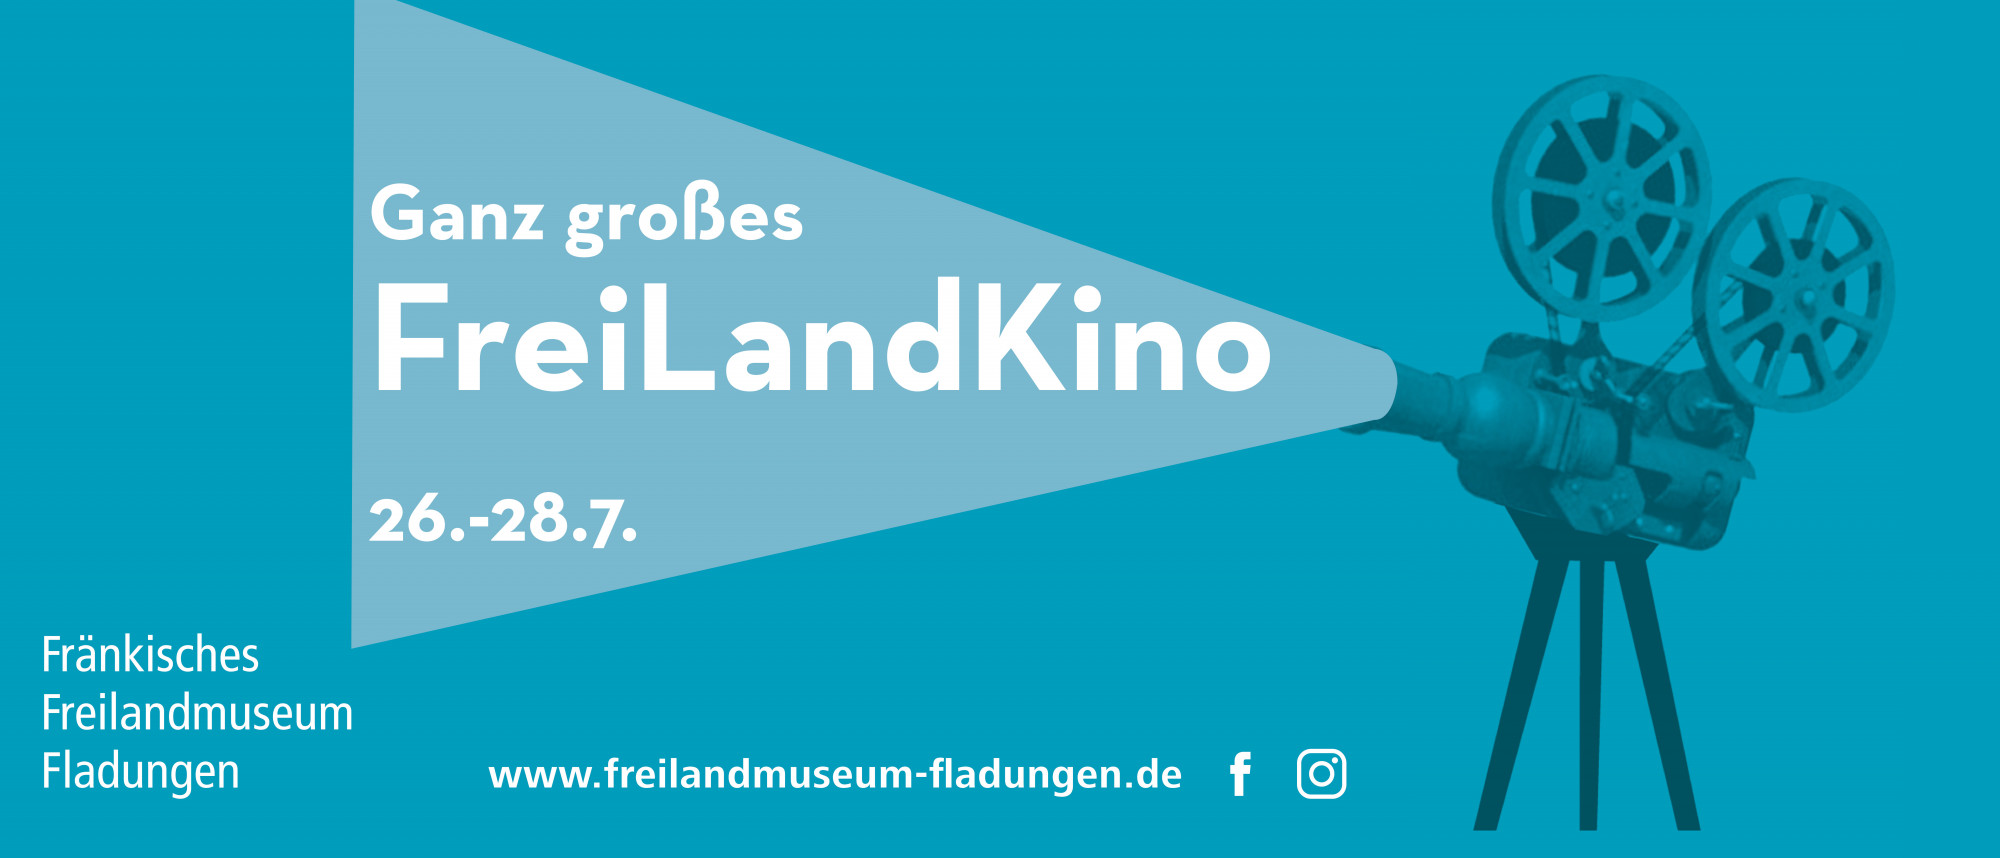 Kinoprojektor, Text: Ganz großes FreiLandKino 26.-28.7. Fränkisches Freilandmuseum Fladungen